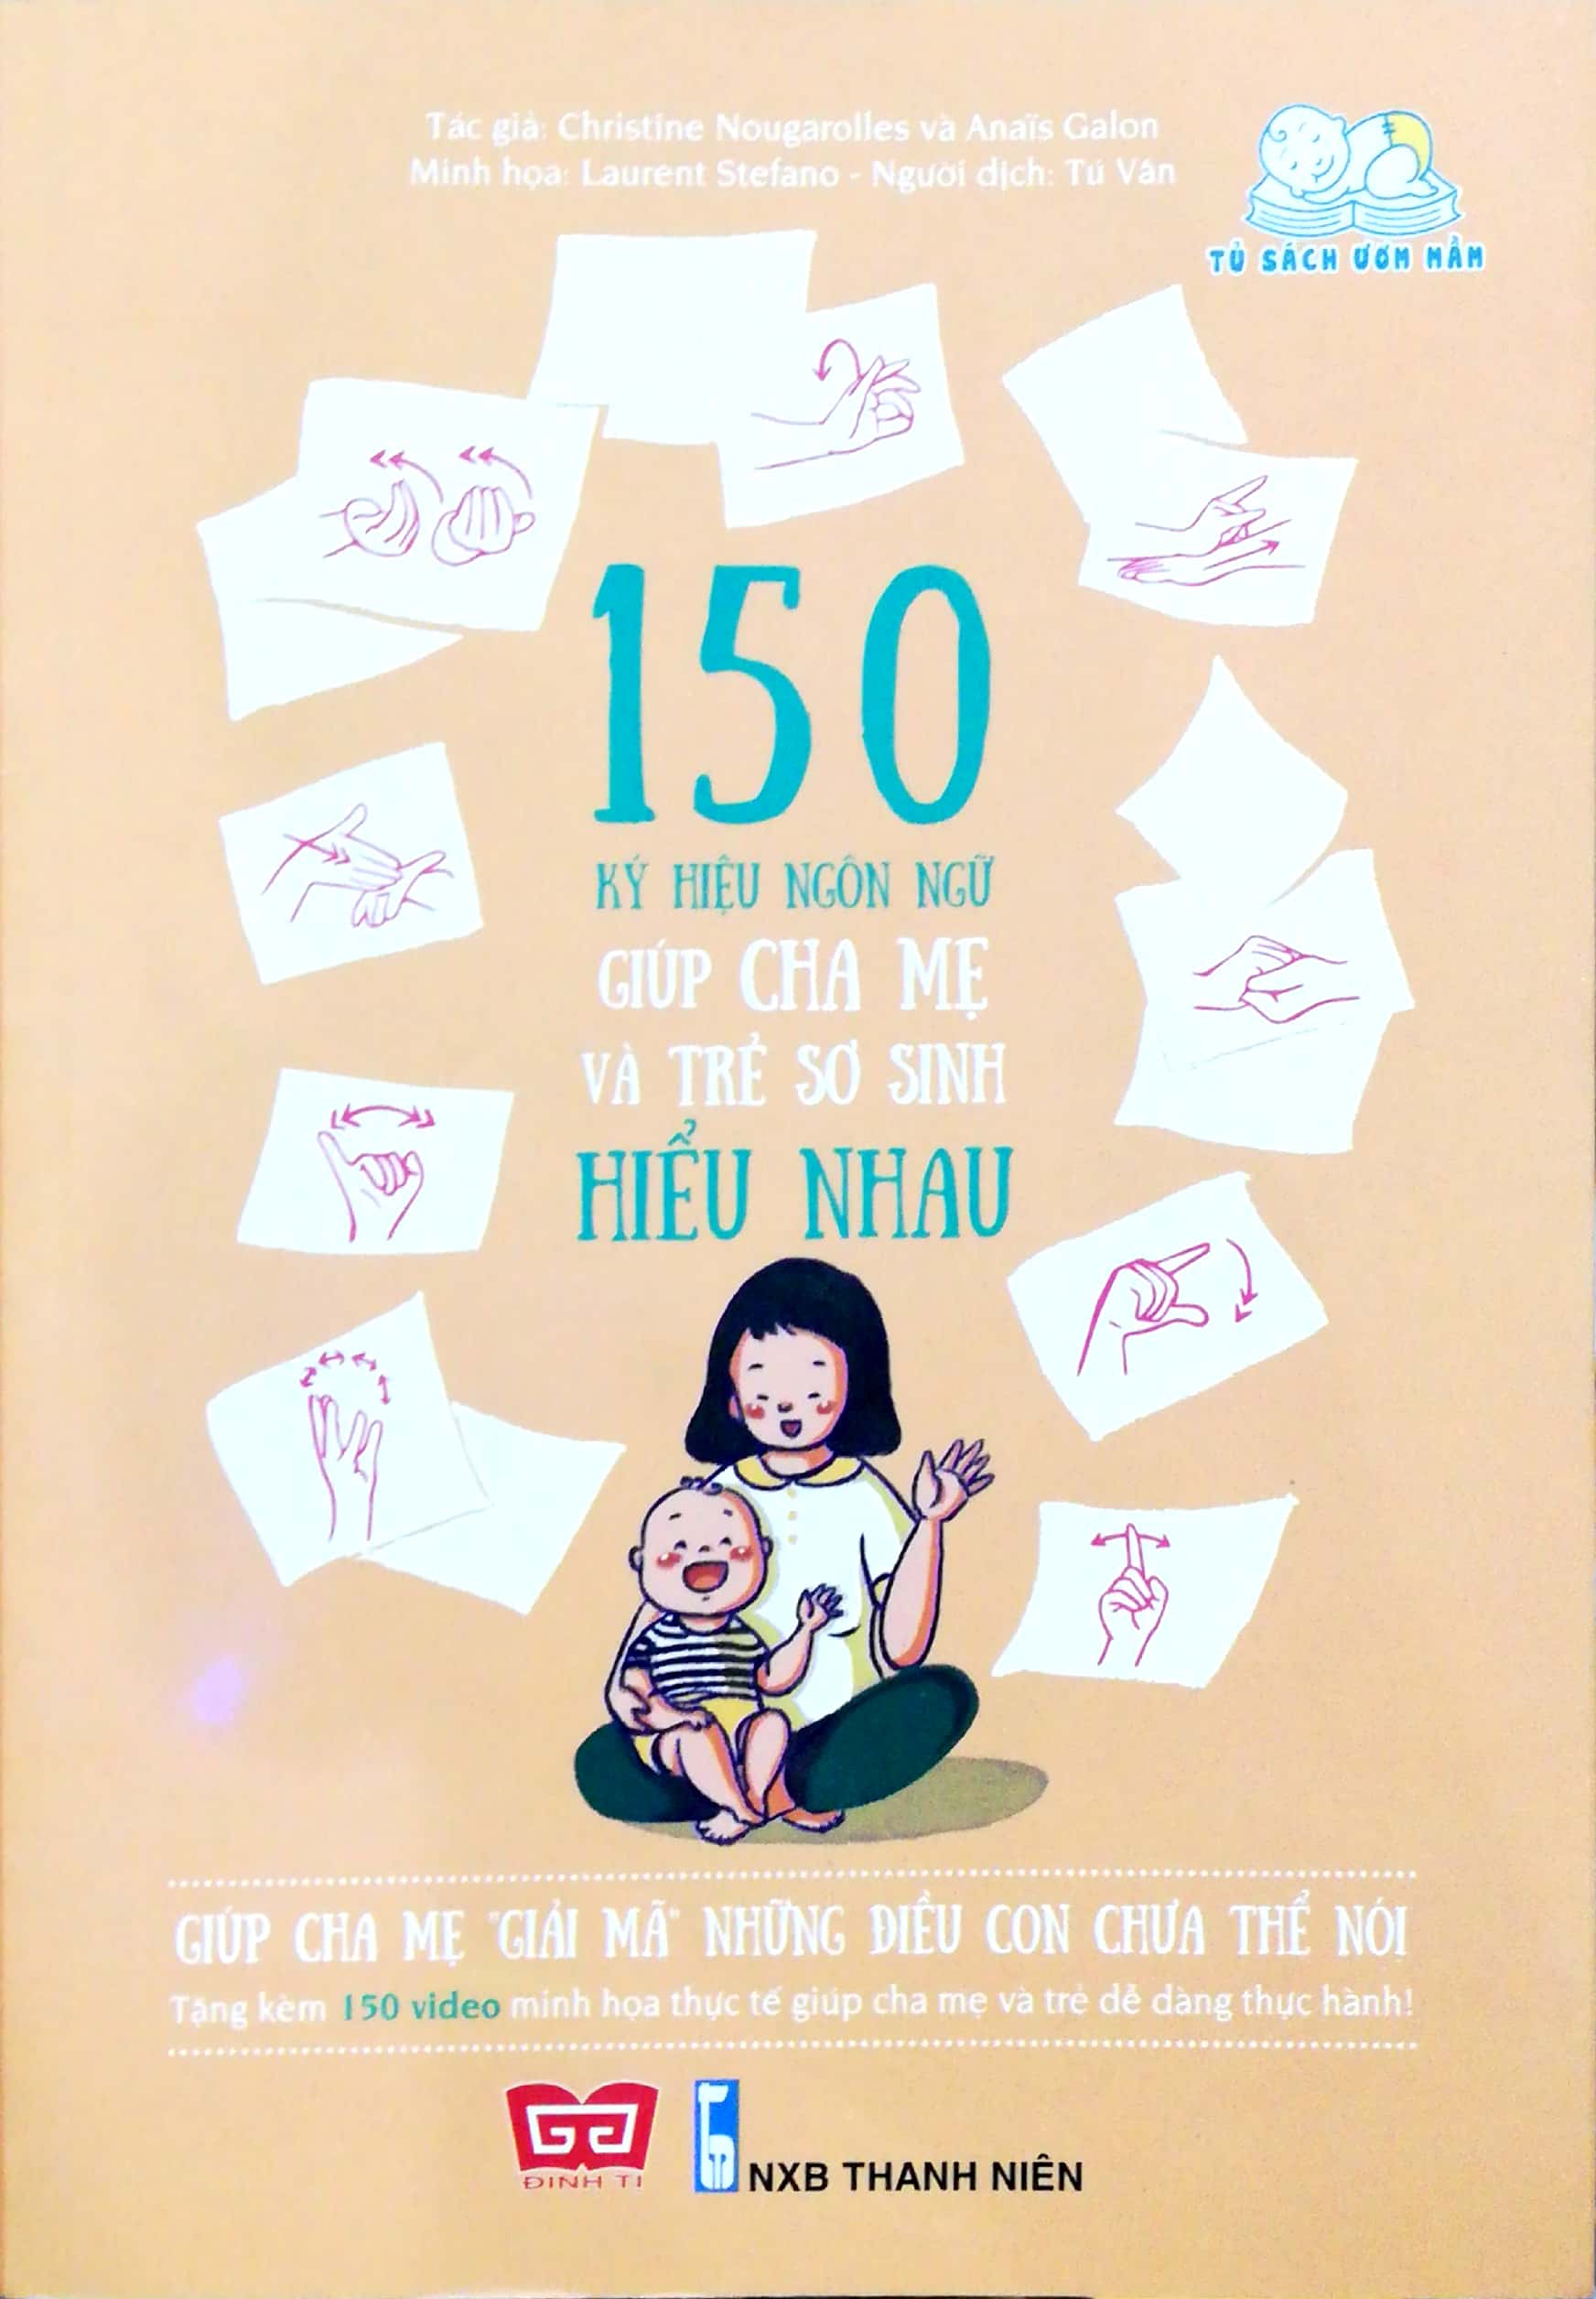 150 Ký Hiệu Ngôn Ngữ Giúp Cha Mẹ Và Trẻ Sơ Sinh Hiểu Nhau Tặng Kèm 150 Video Minh Họa PDF